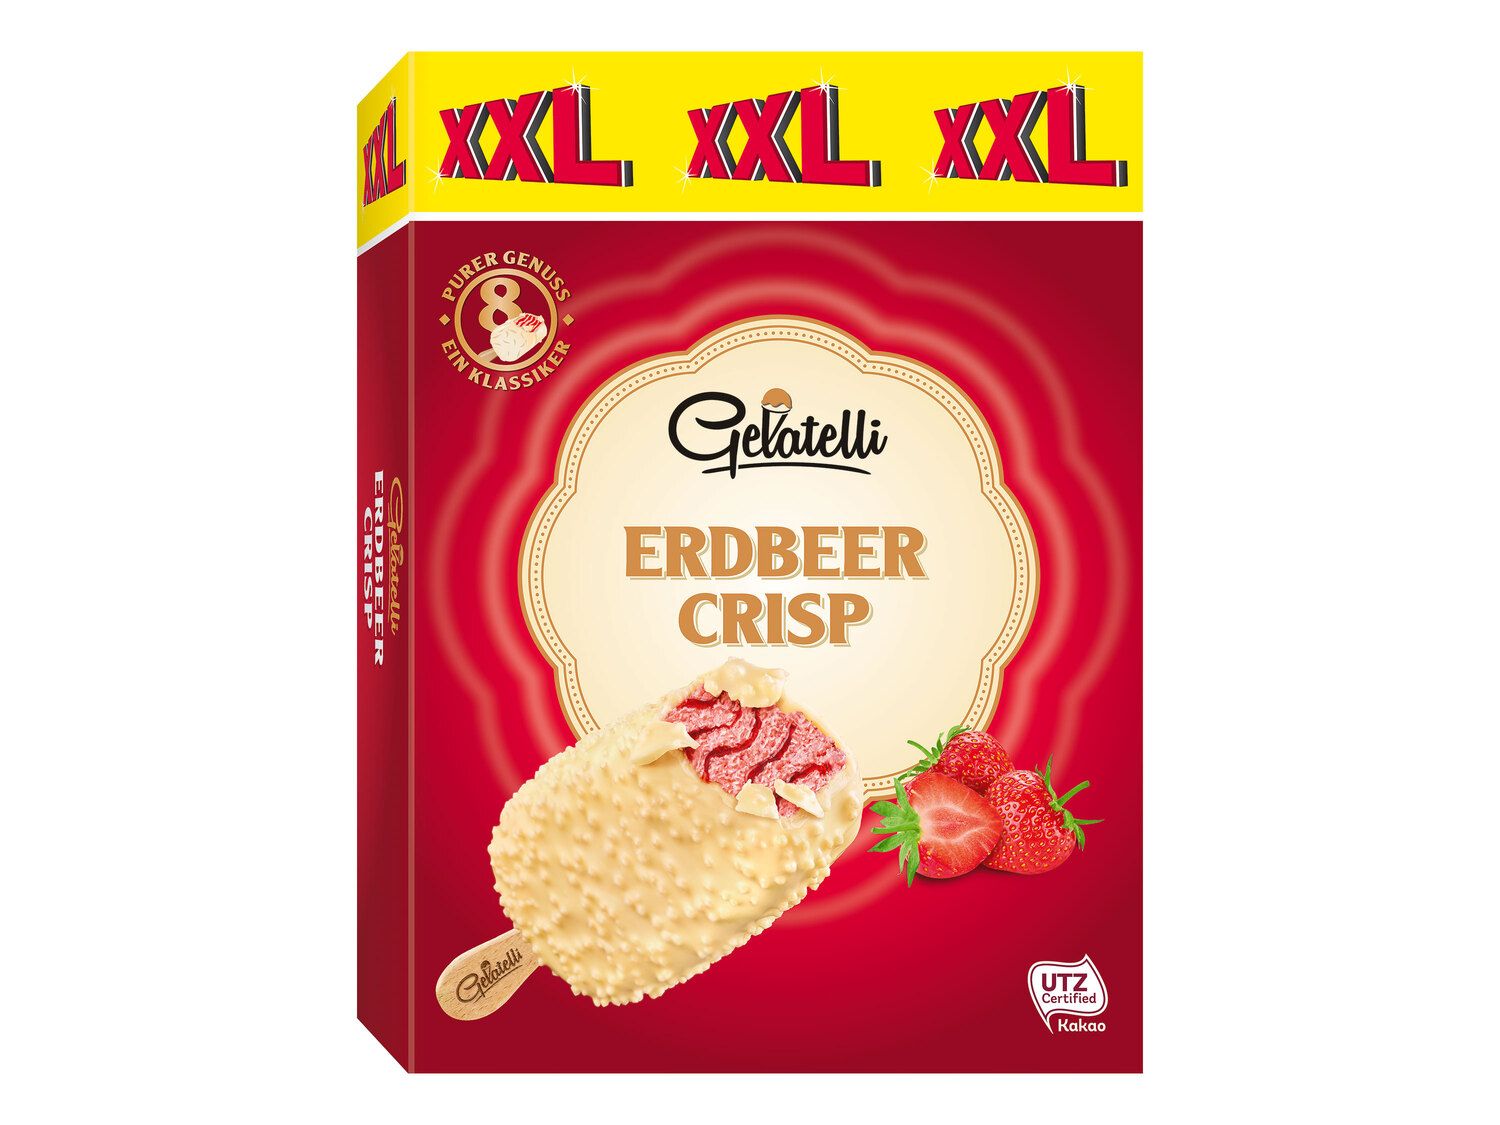 Lidl Gelatelli Deutschland - Stieleis XXL Crisp Erdbeer